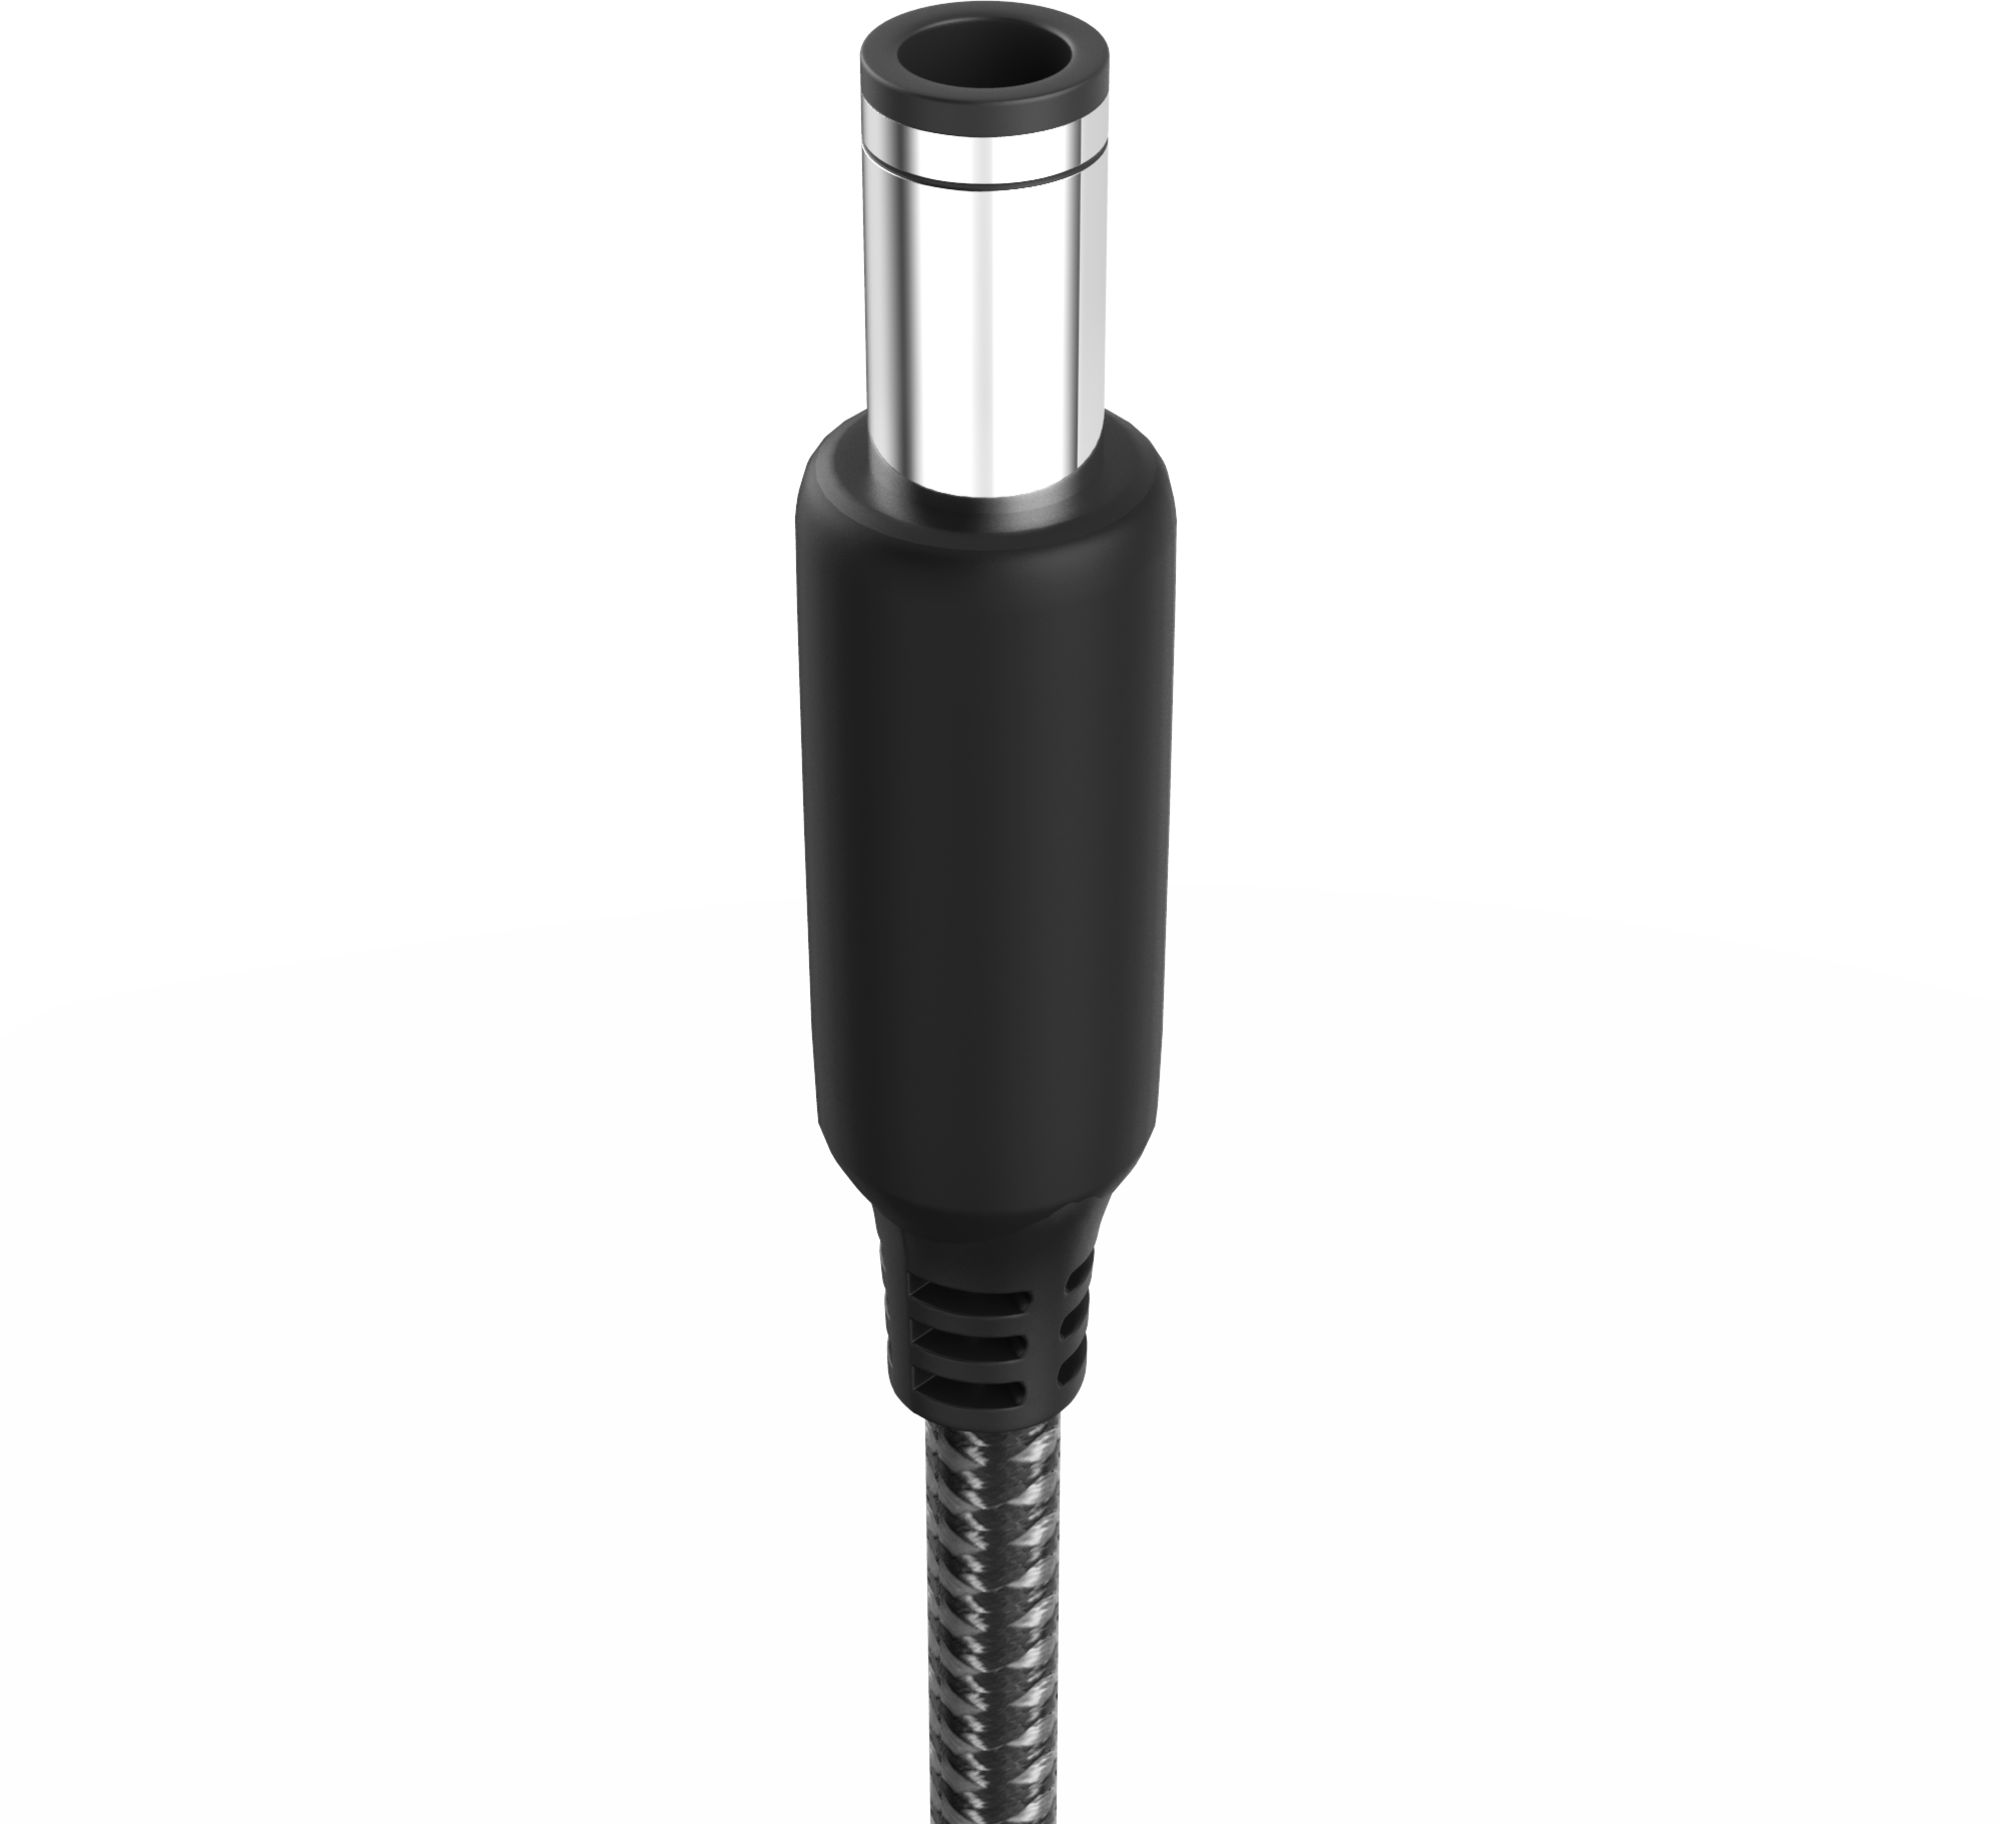 Adaptateur USB C vers Jack 3.5 mm - PSCJ1BK - Noir POSS